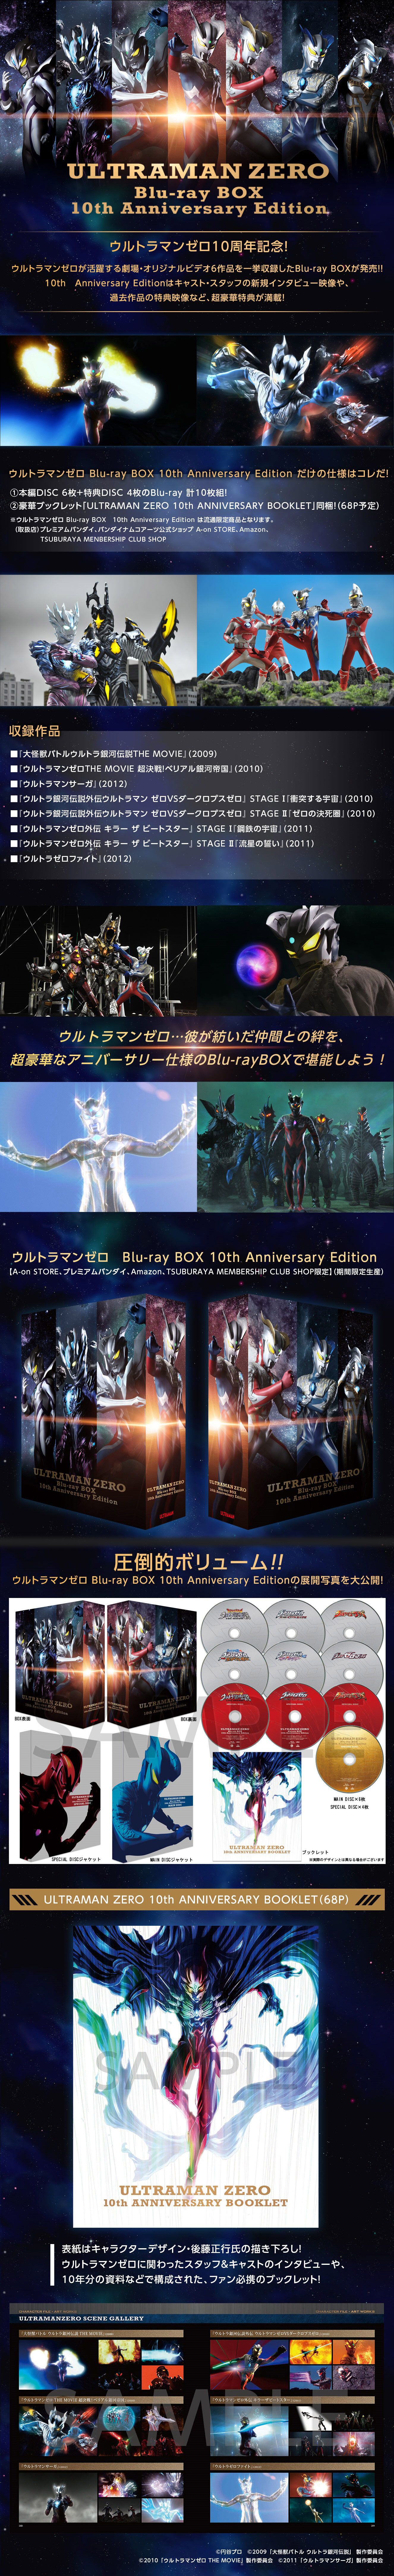 ウルトラマンゼロ Blu-ray BOX 10th Anniversary Edition【A-on